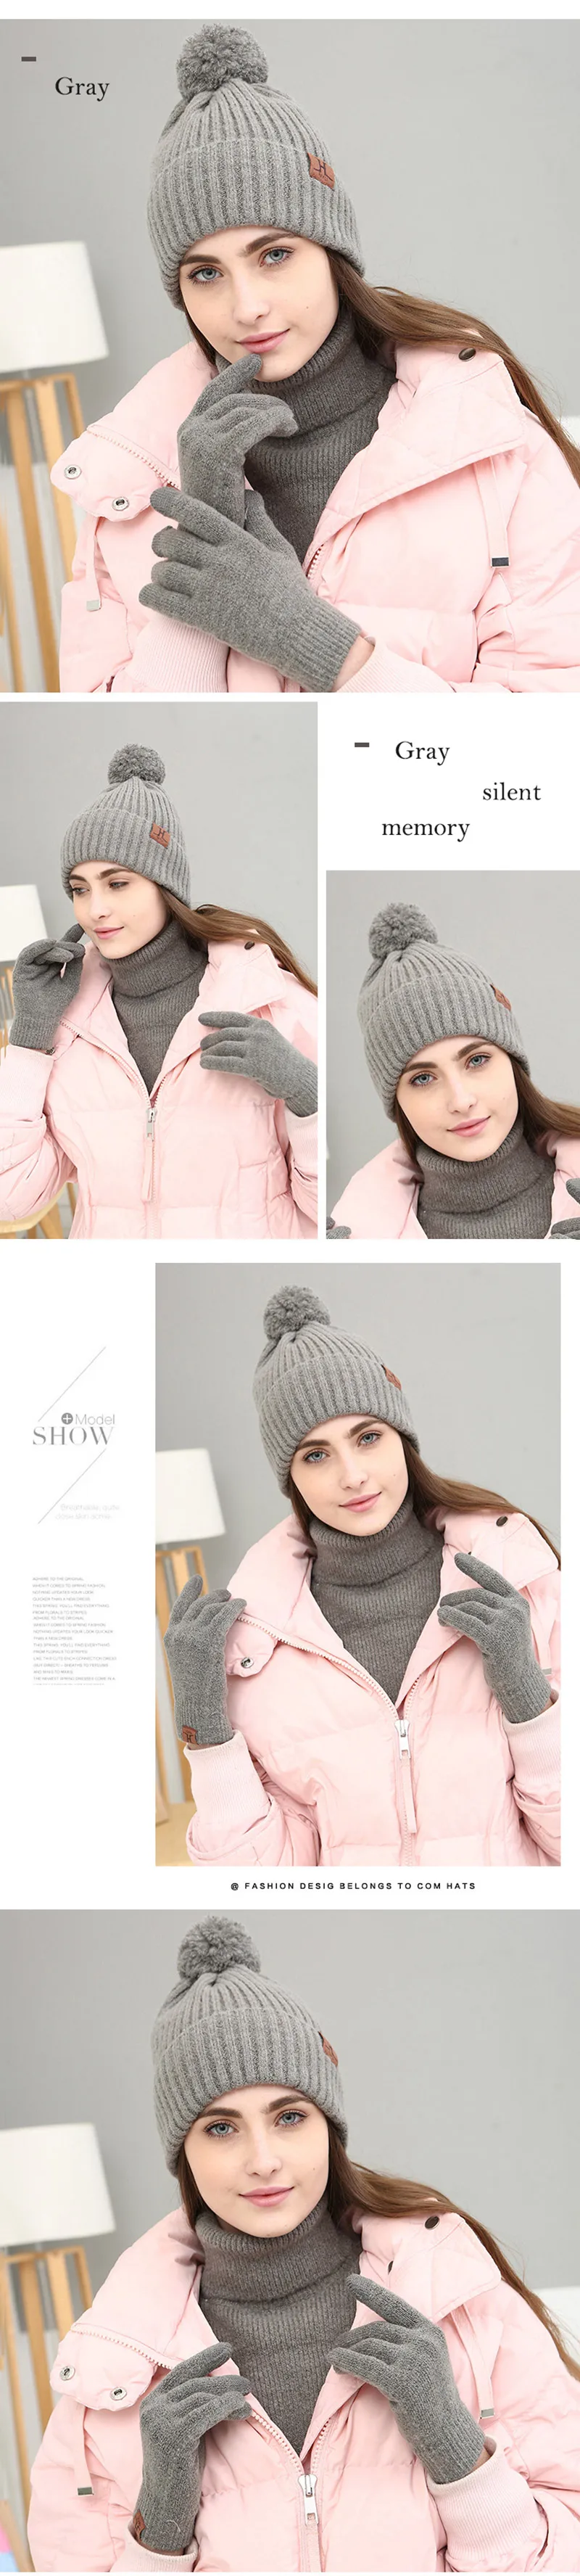 RUNMEIFA новый шарф, шляпа и перчатки наборы для Для женщин Сплошной Теплые комплекты студент акриловые шапочки шею перчатки Trend Лидер